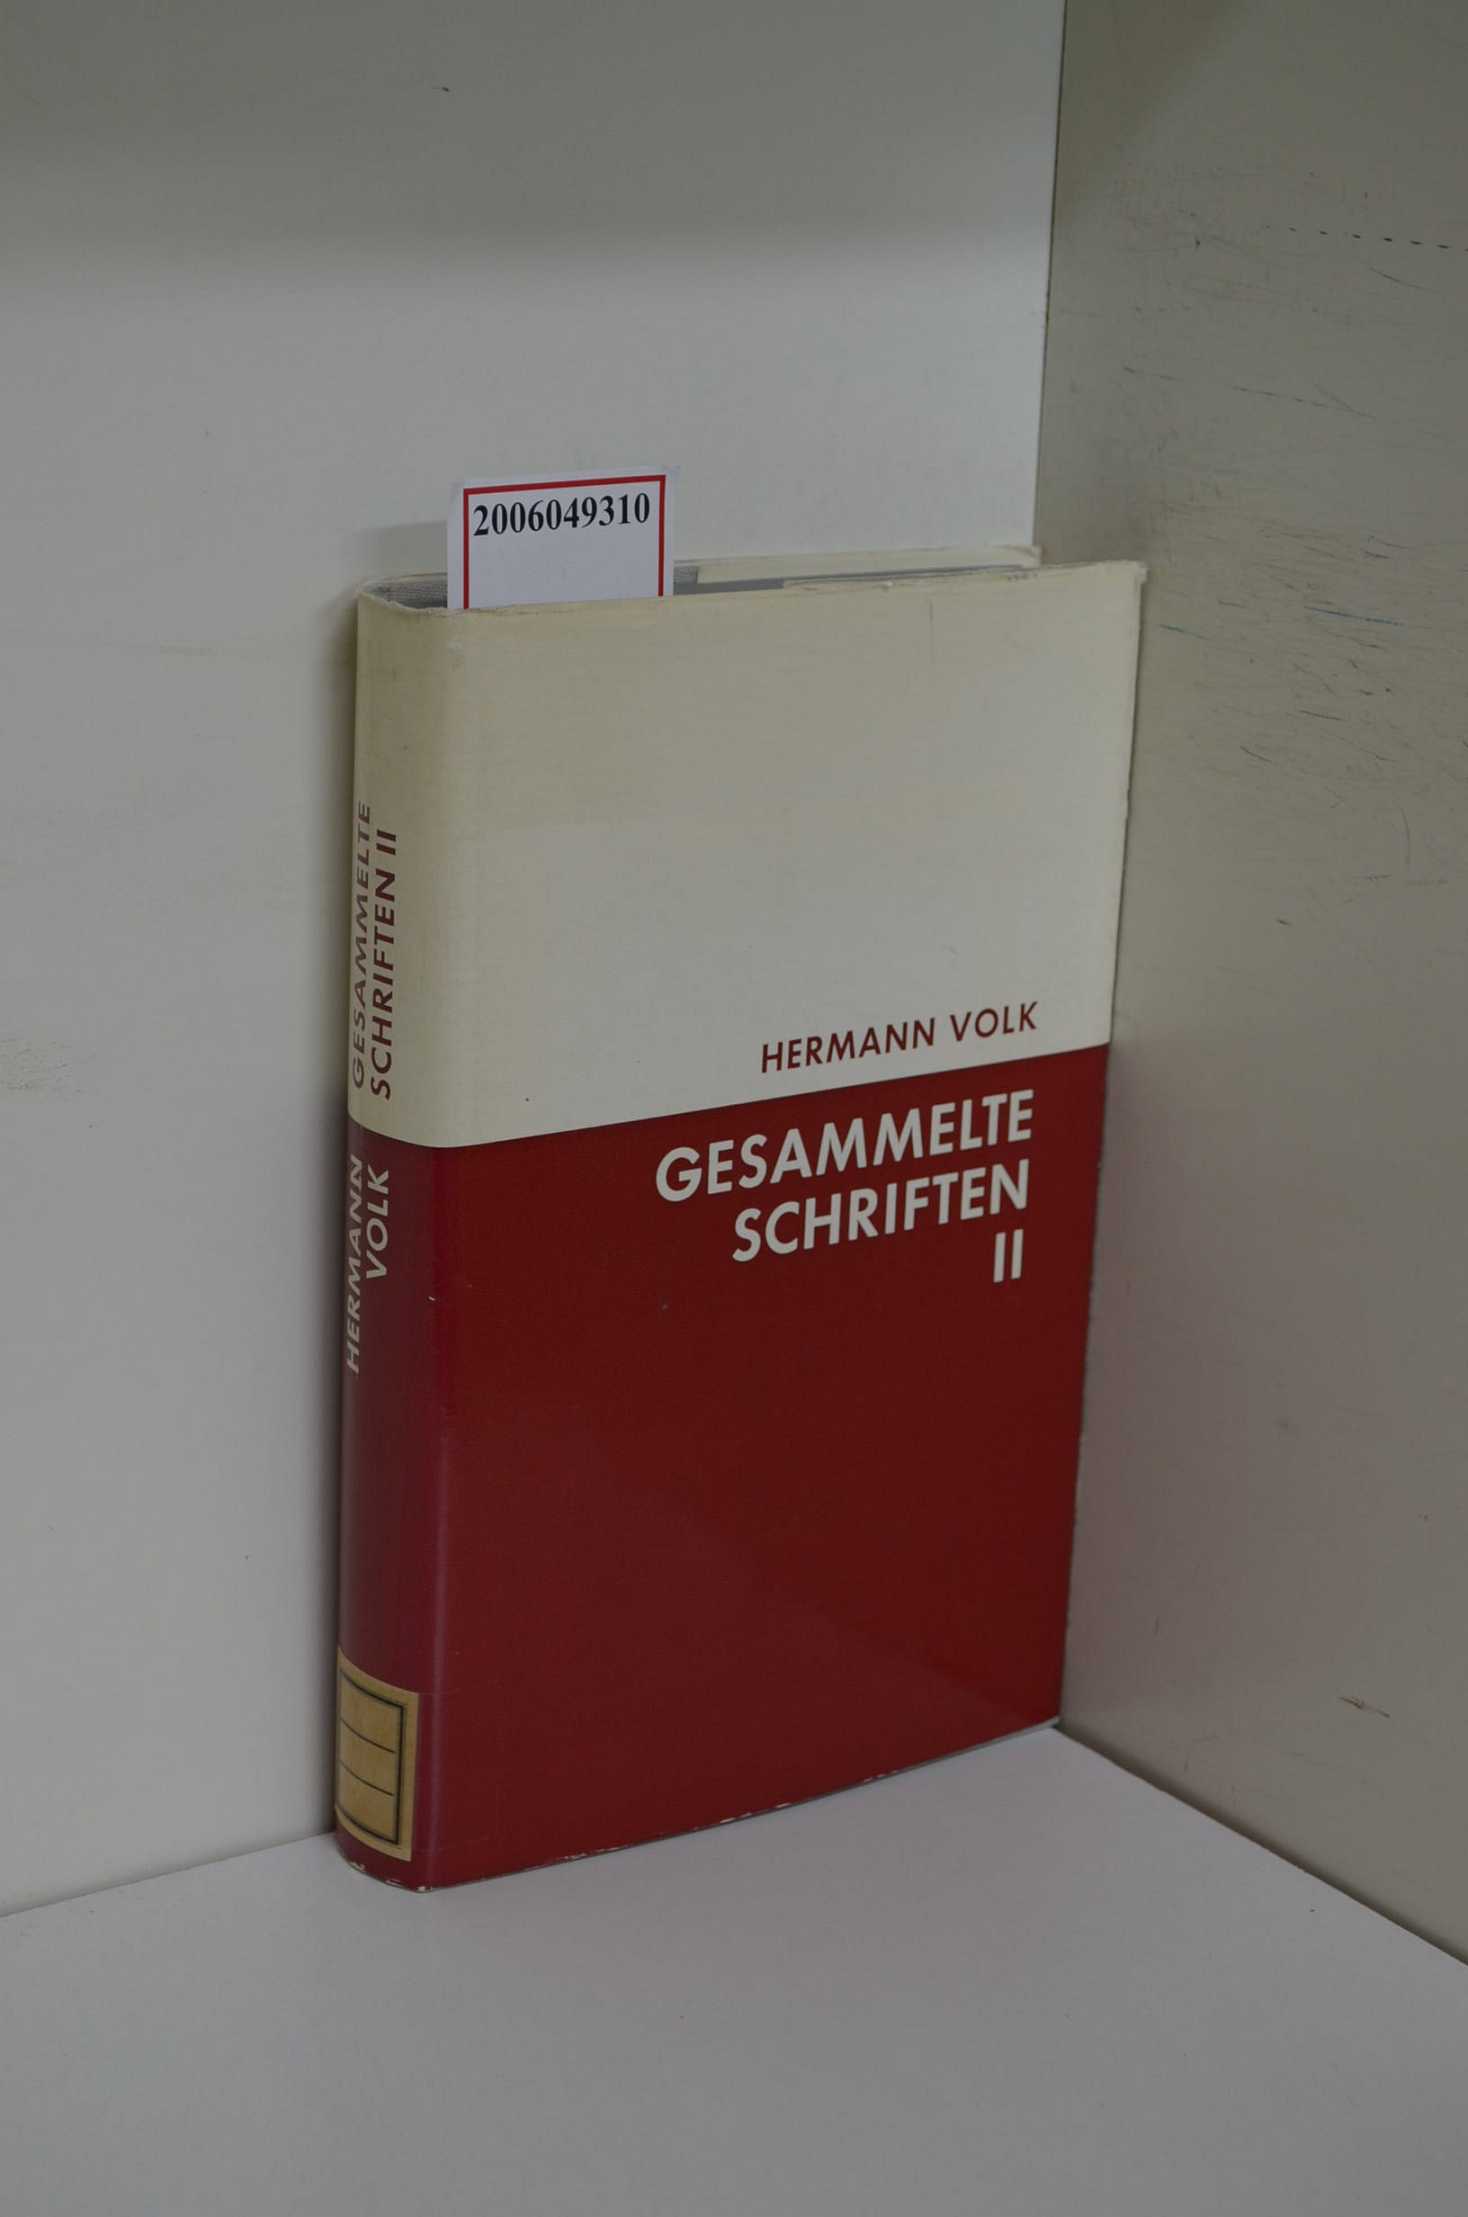 Volk, Hermann / Gesammelte Schriften Band 2 - Volk, Hermann